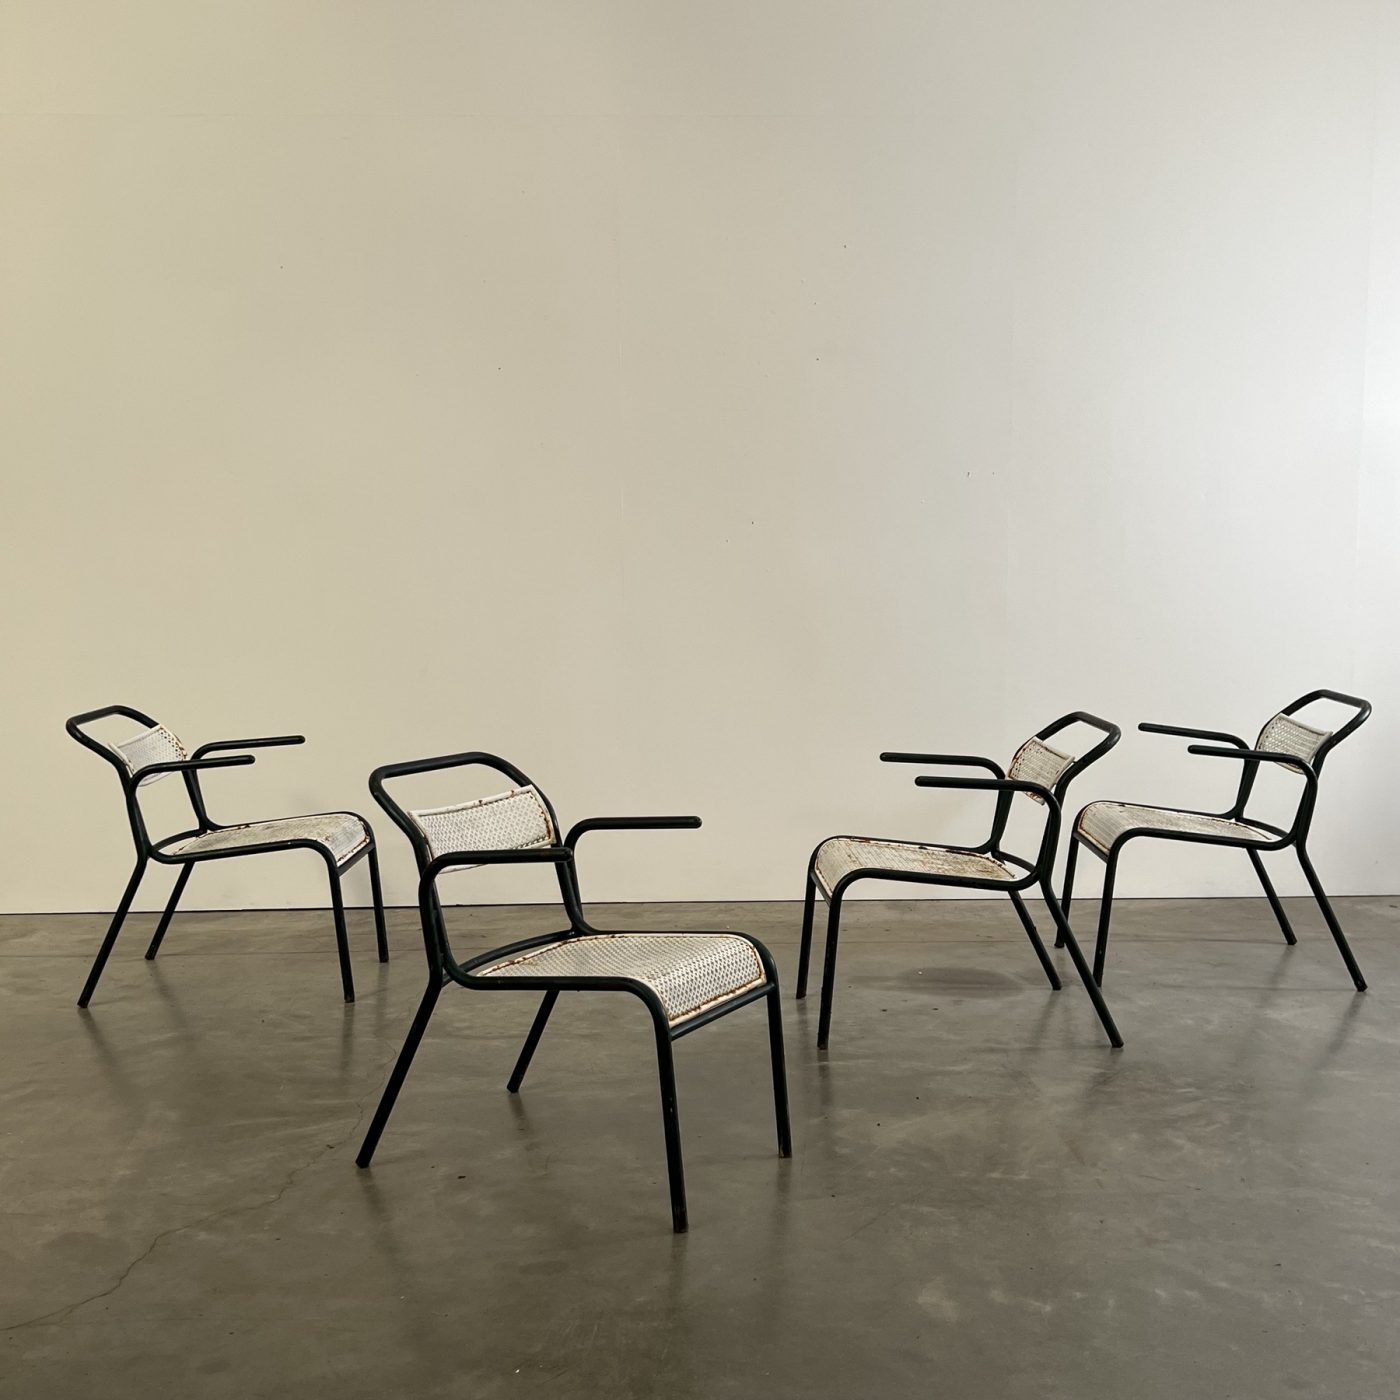 objet-vagabond-garden-chairs0004